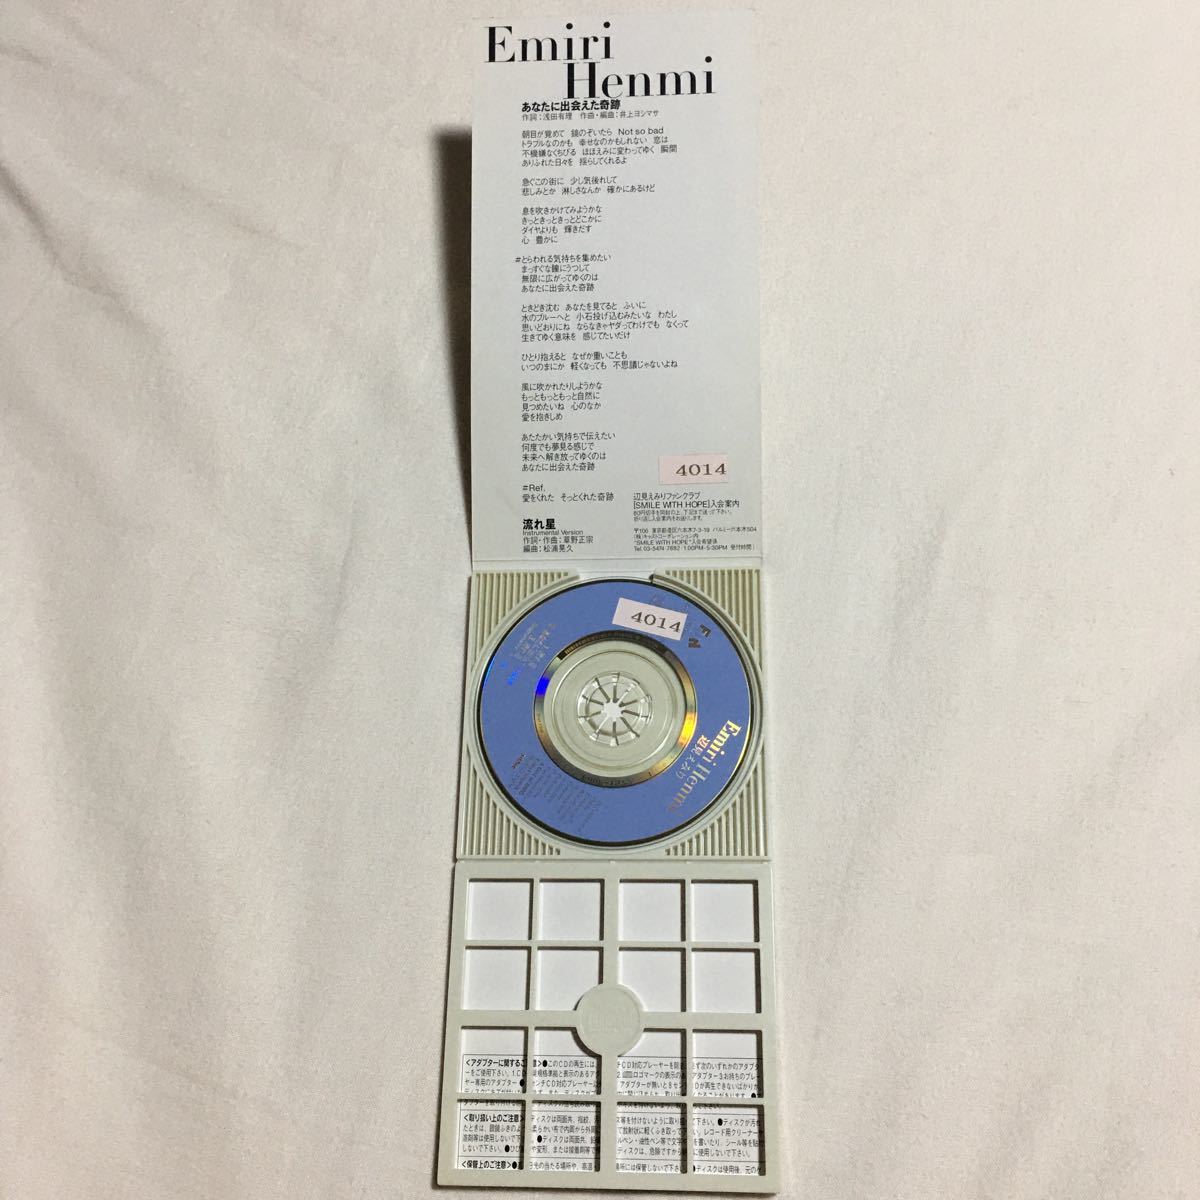  Henmi Emiri CD одиночный текущий звезда ( Spitz .. правильный . лирика композиция ), вы ..... чудо ( Inoue yosimasa композиция аранжировка )